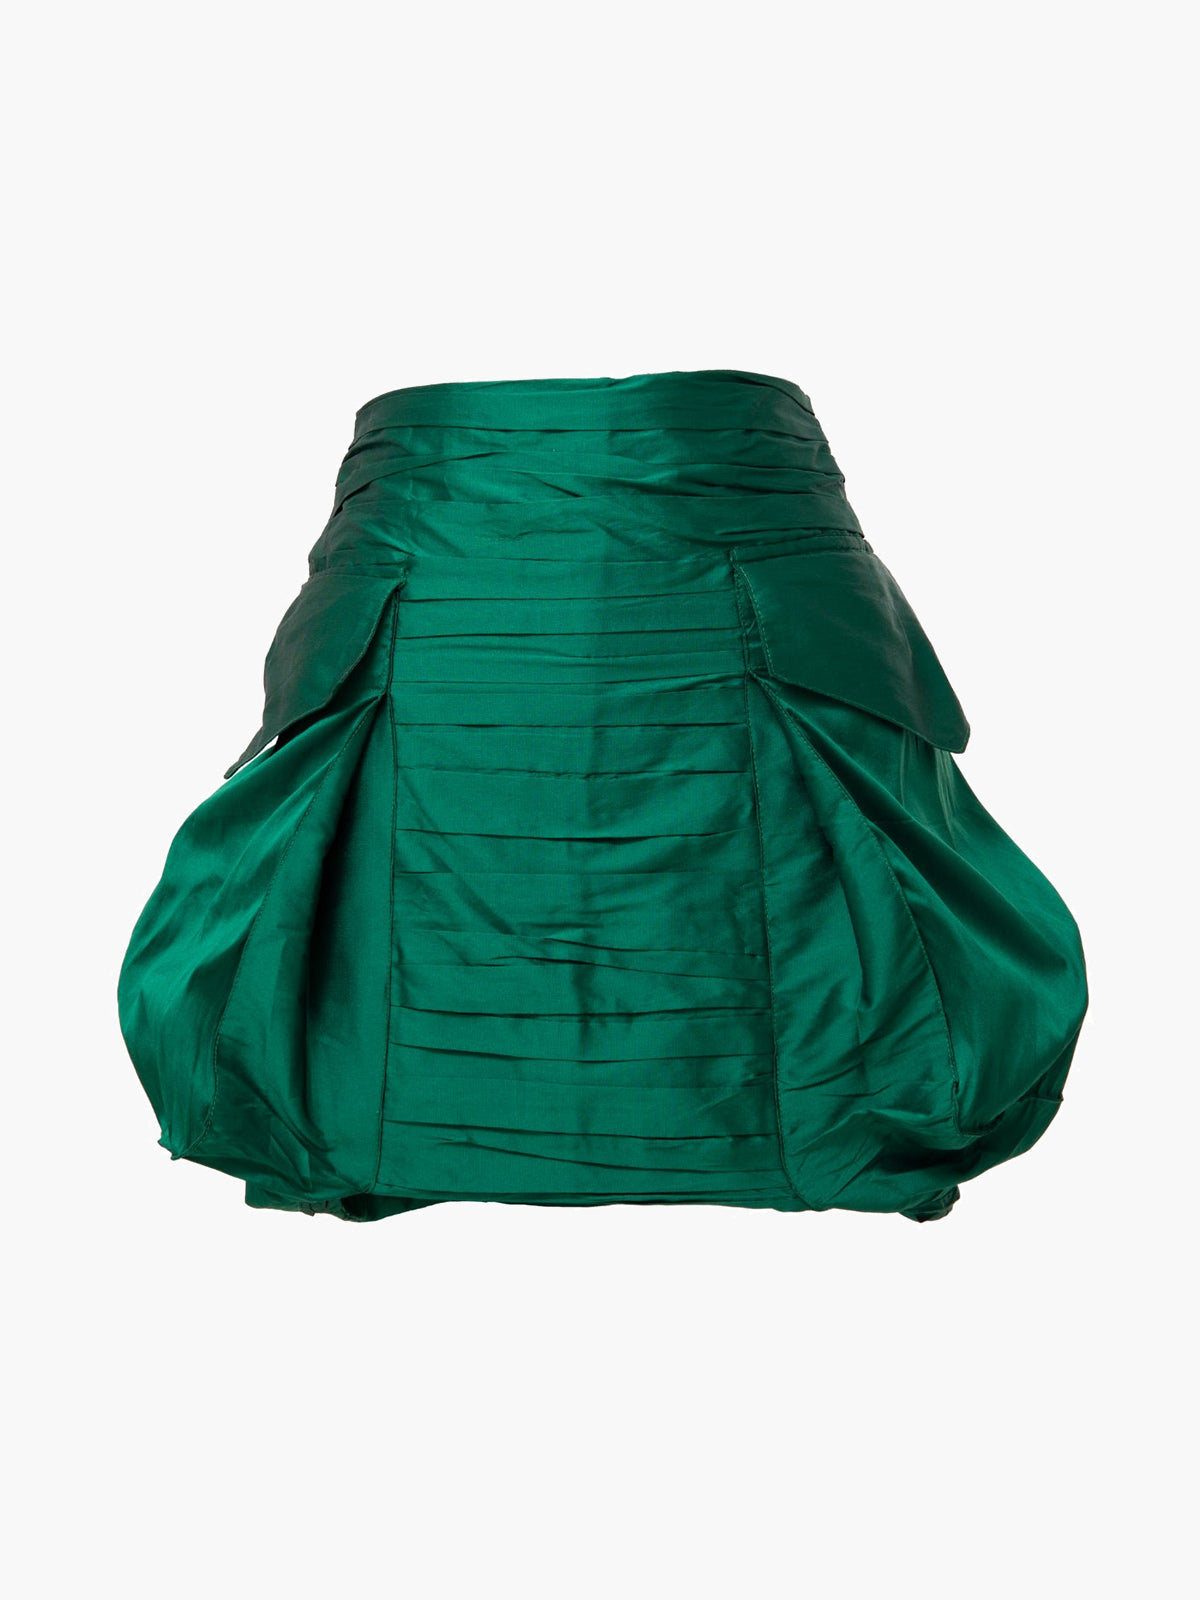 Costa Skirt | Emerald Green Costa Skirt | Emerald Green